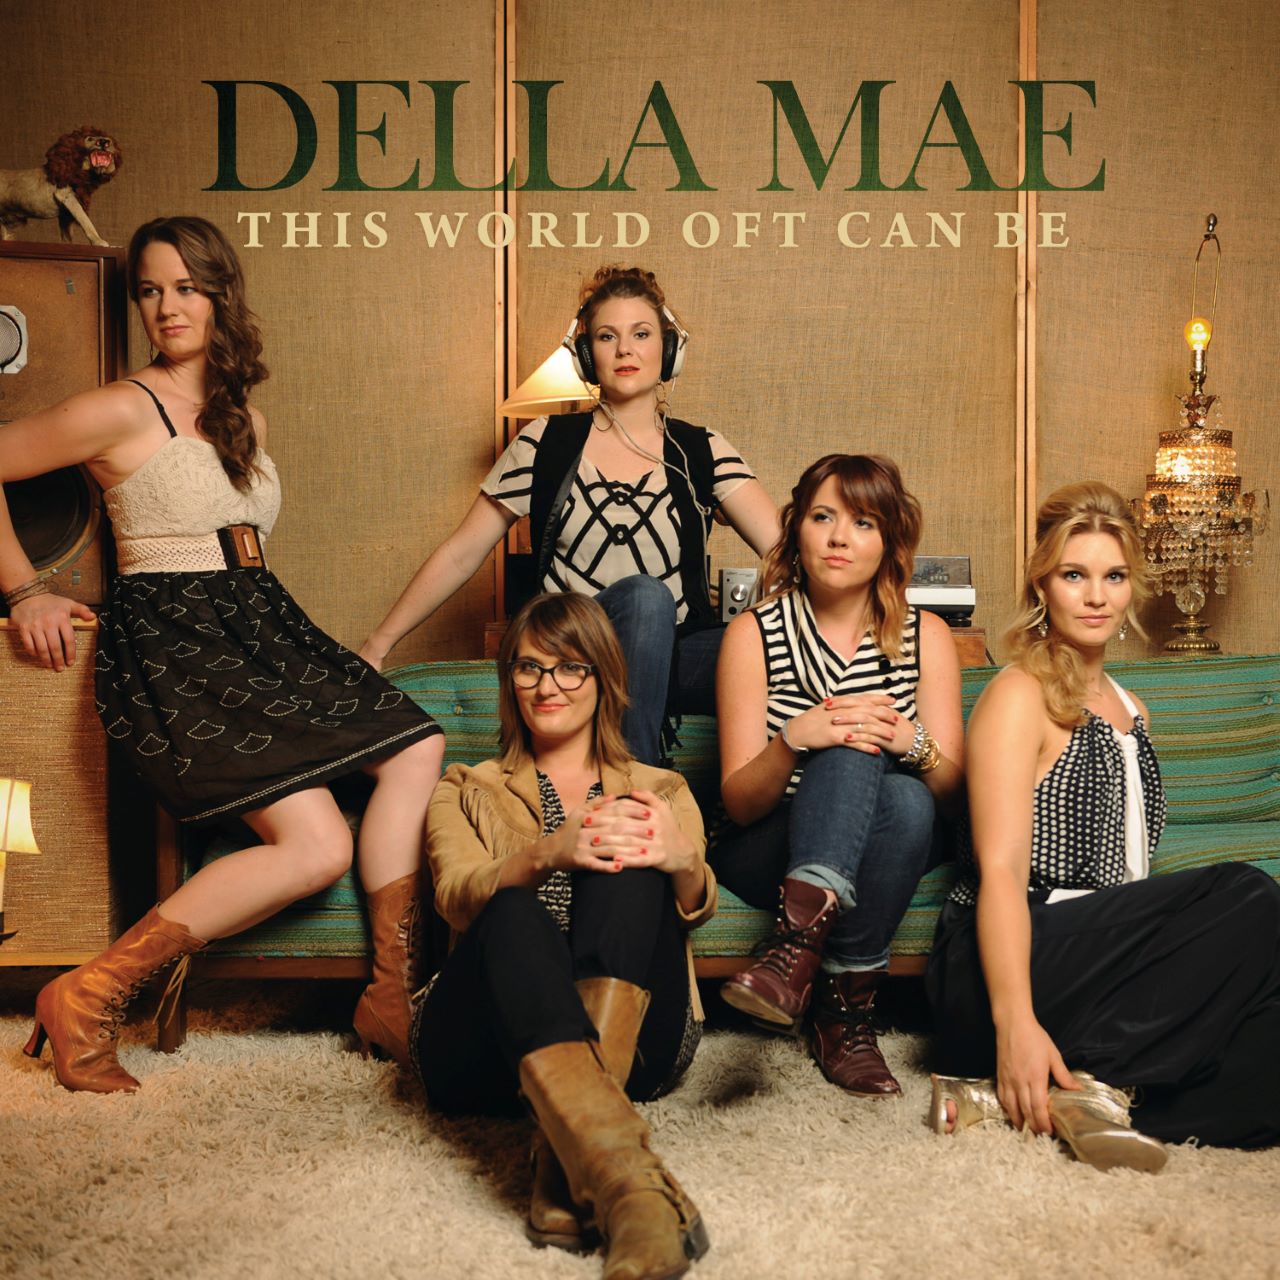 Della Mae - This World Oft Can Be cover album